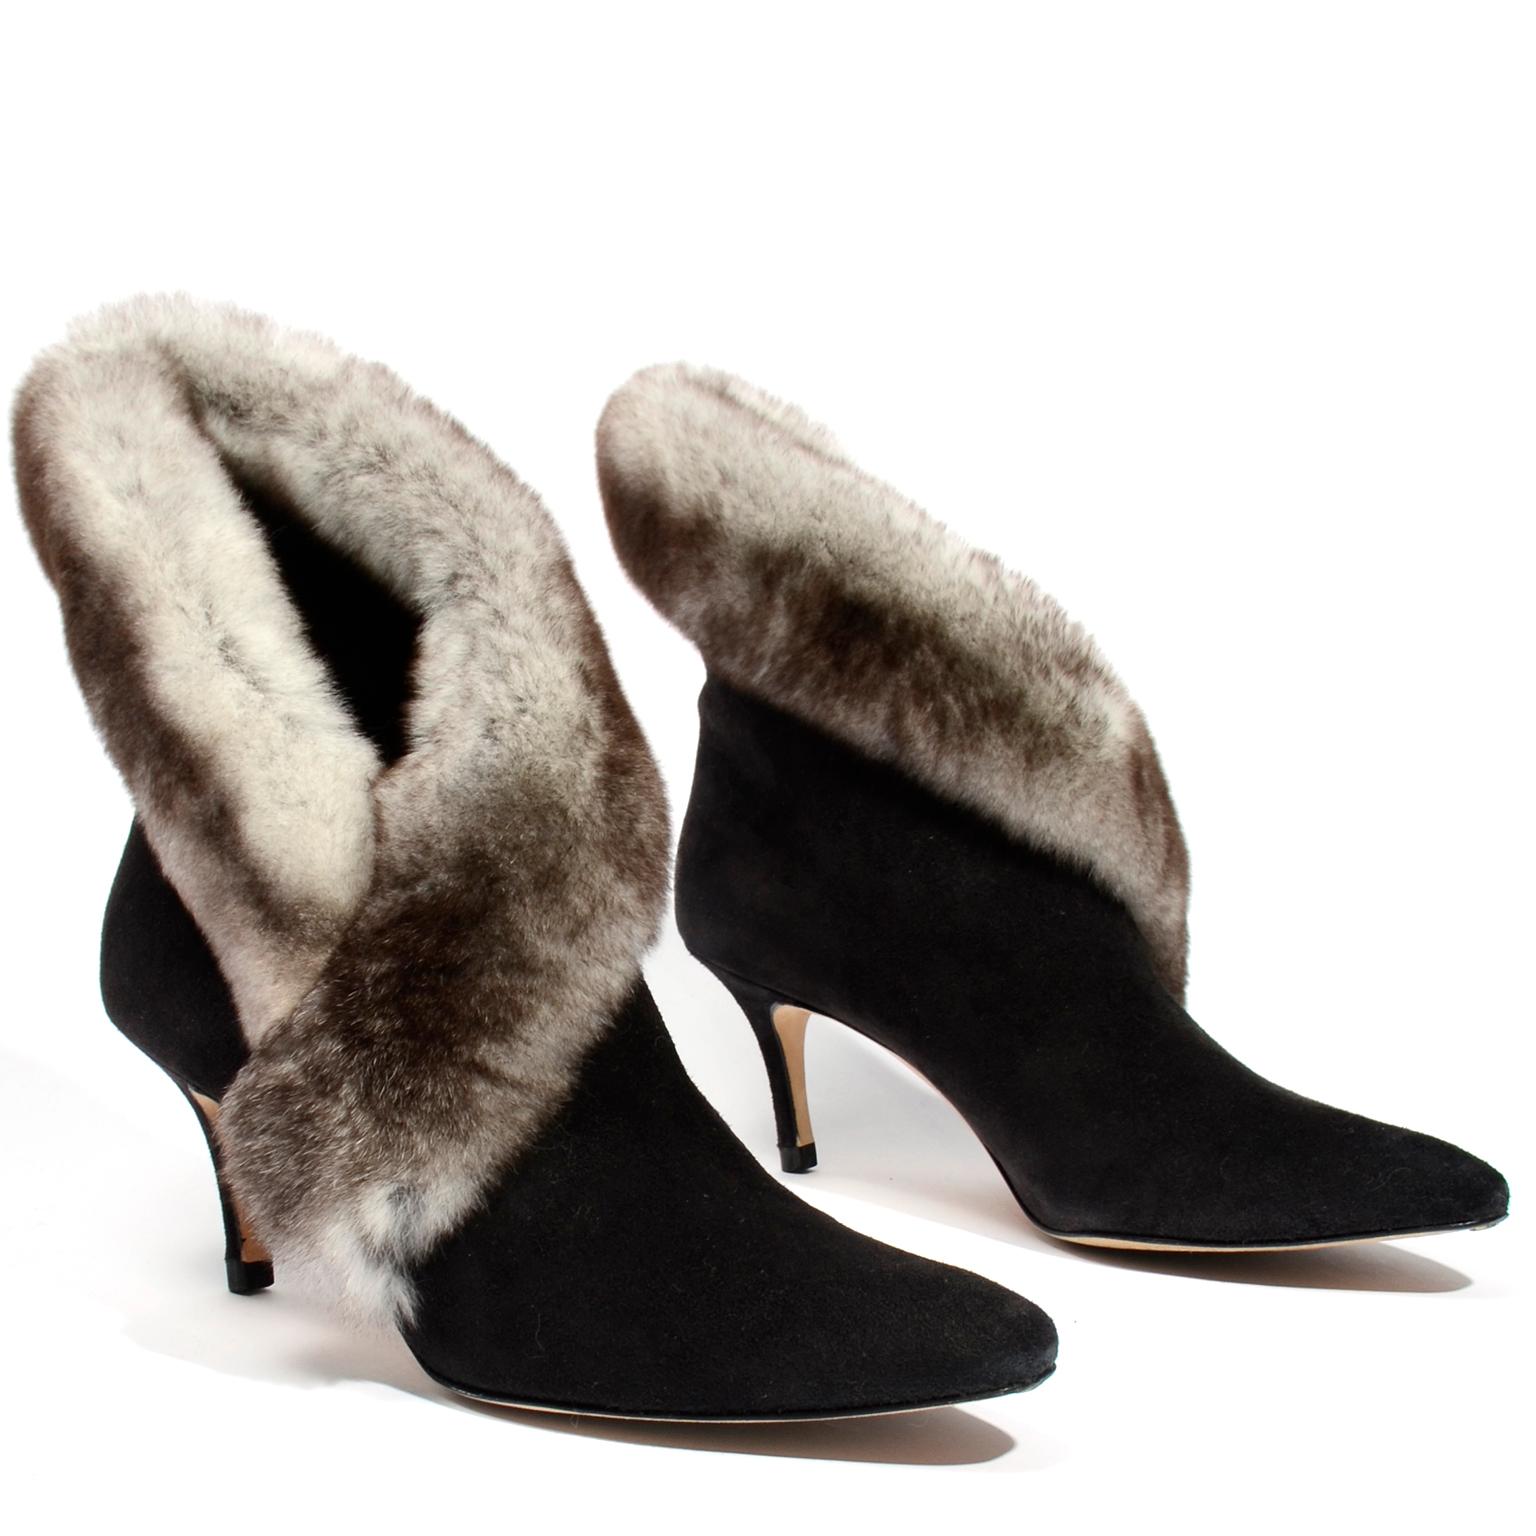 Women's  Manolo Blahnik Black Suede Booties W Heels & Luxe Mink Trim w Box & Shoe Bags